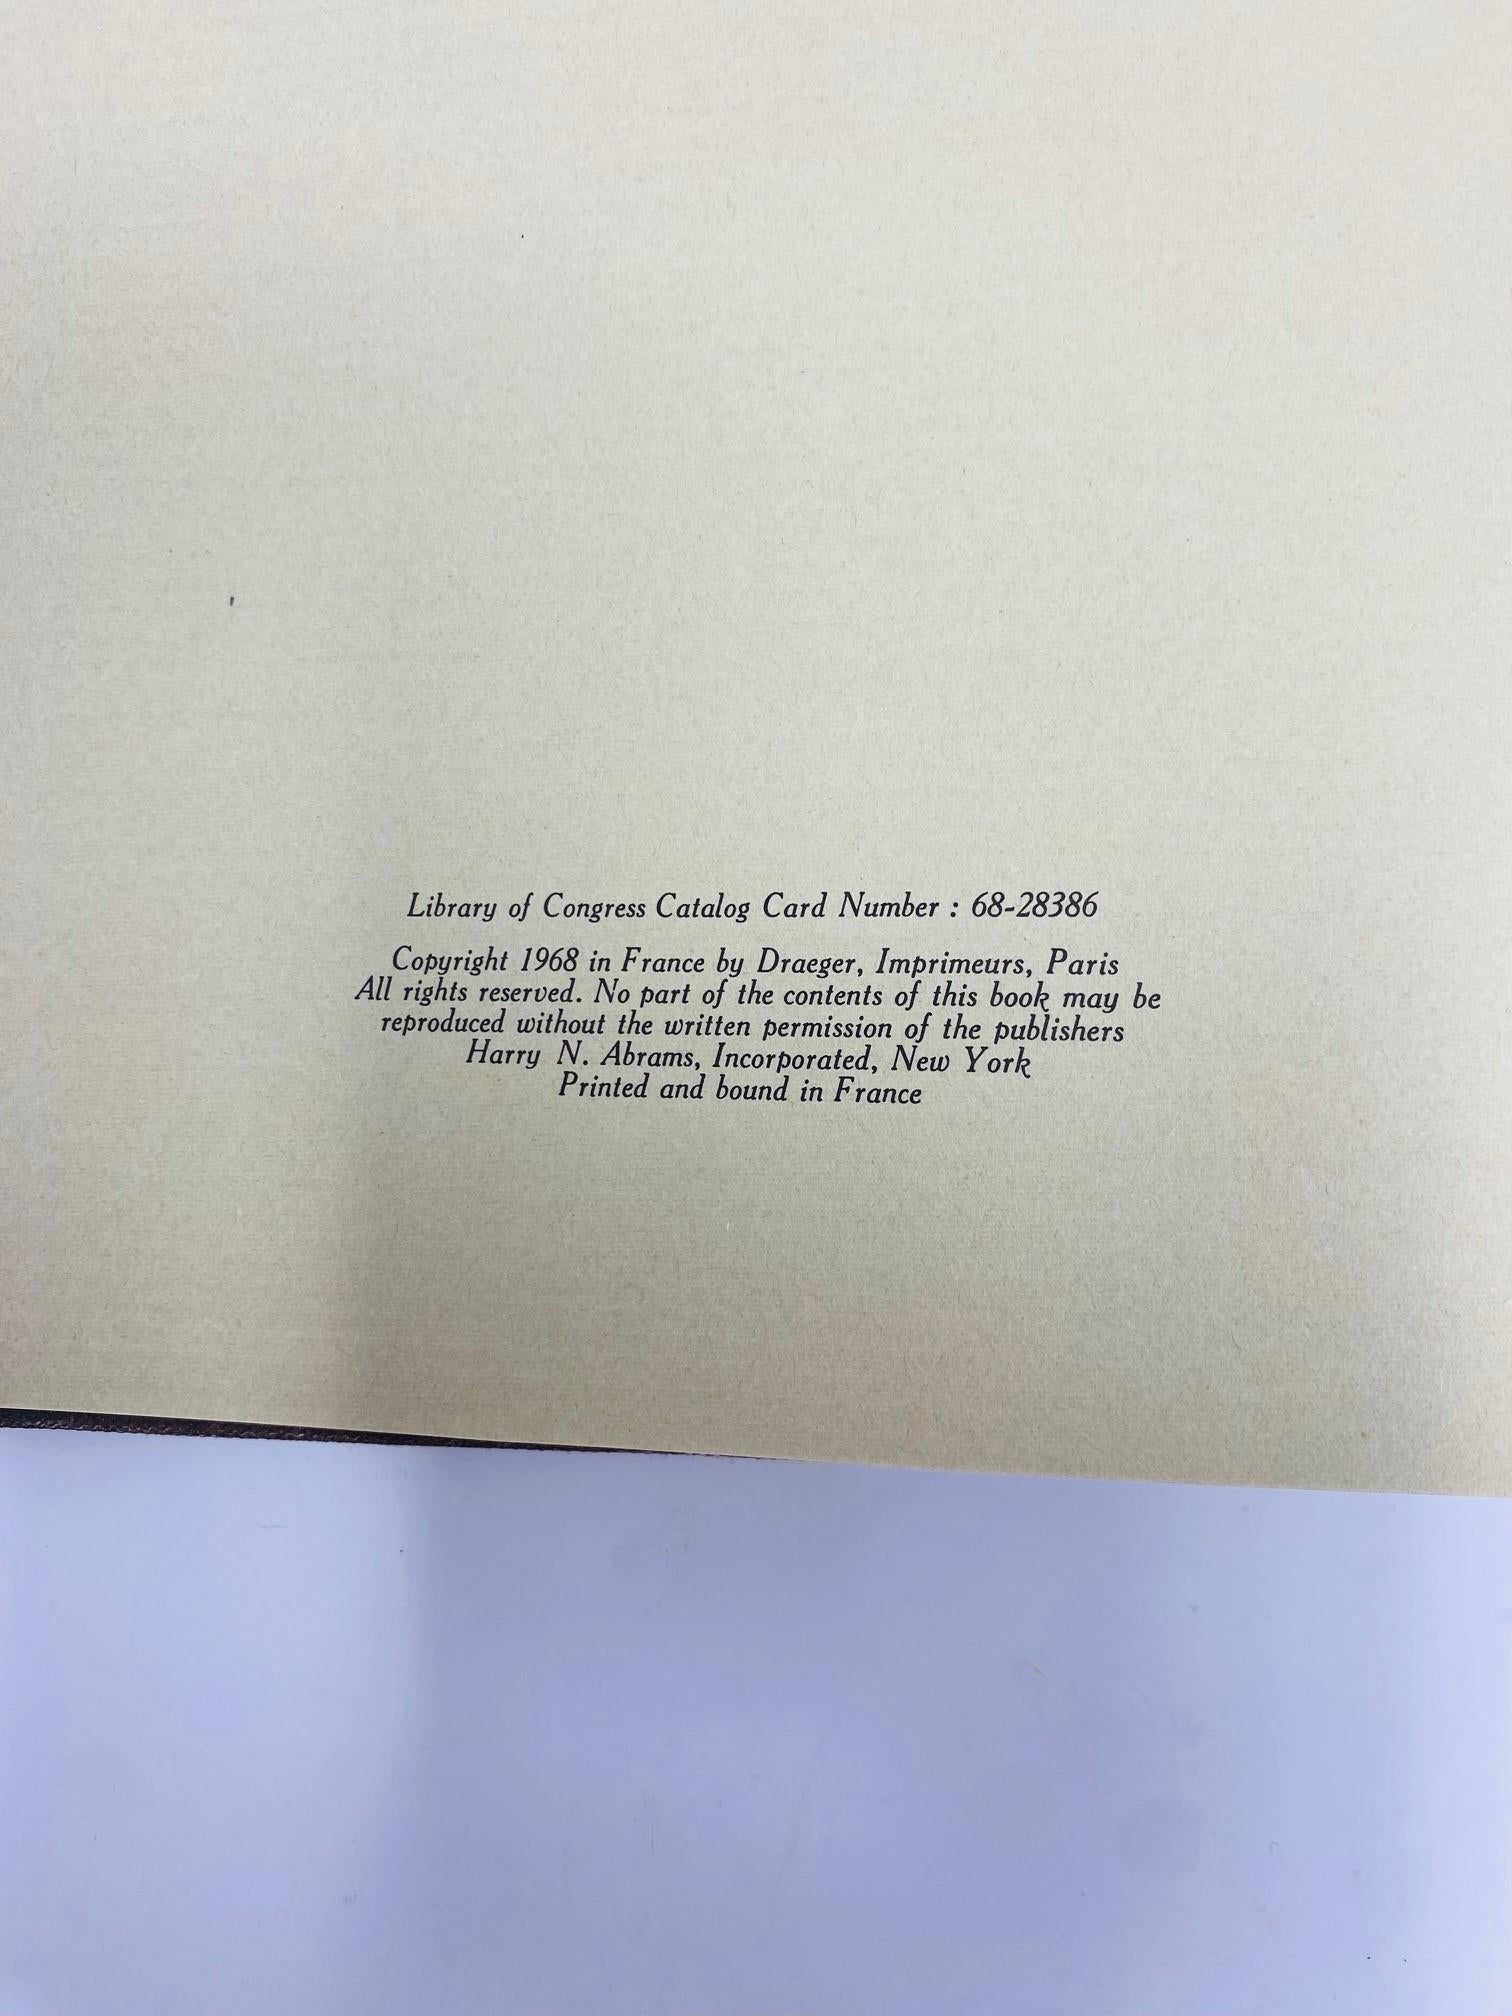 Fin du XVIIe siècle Livre d'art Dali de Draeger par Max Gerard, vintage 1968 en vente